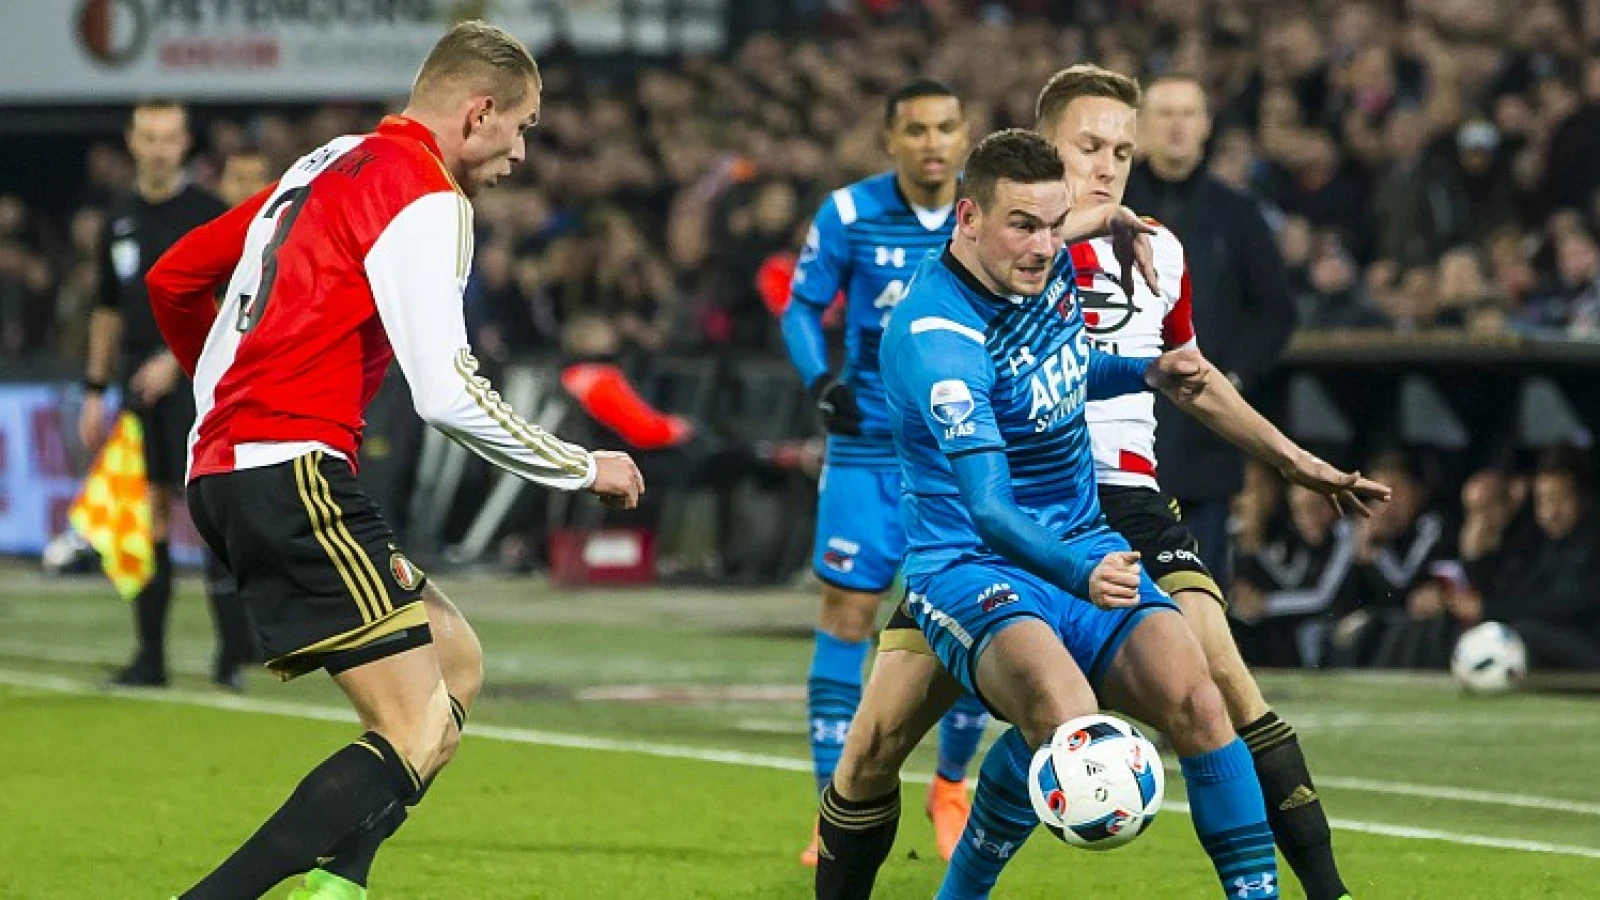 'Nee ik ga niet in een Feyenoord shirt op de tribune zitten'